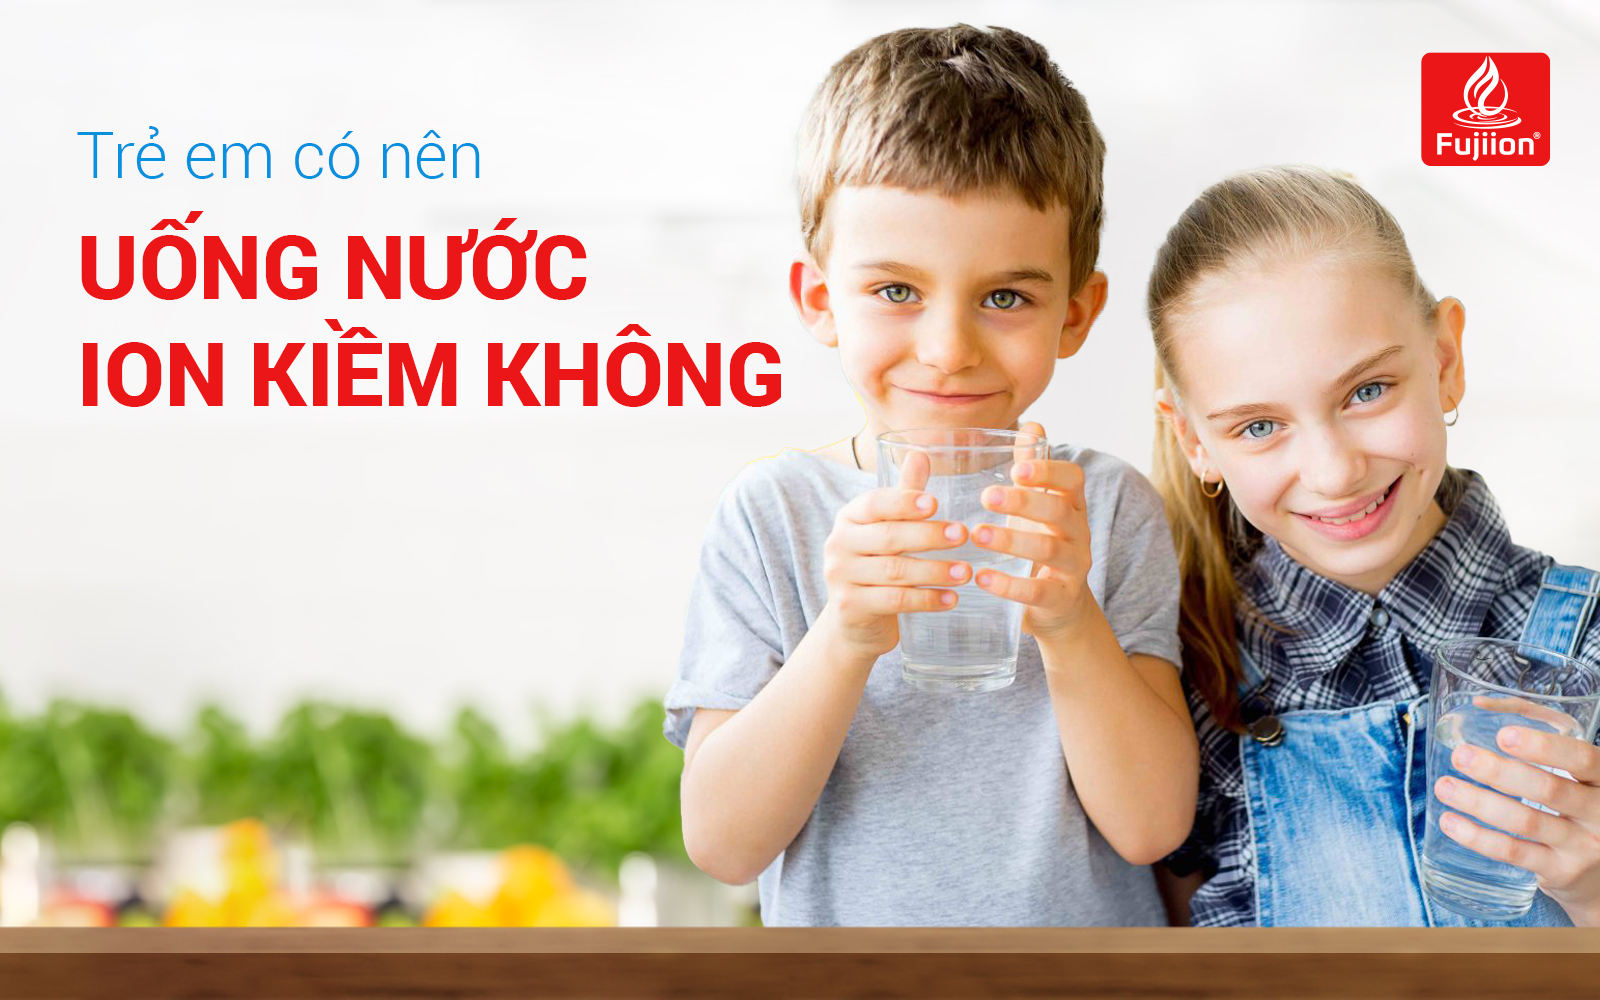 Trẻ em có nên uống nước ion kiềm không và cách sử dụng ĐÚNG